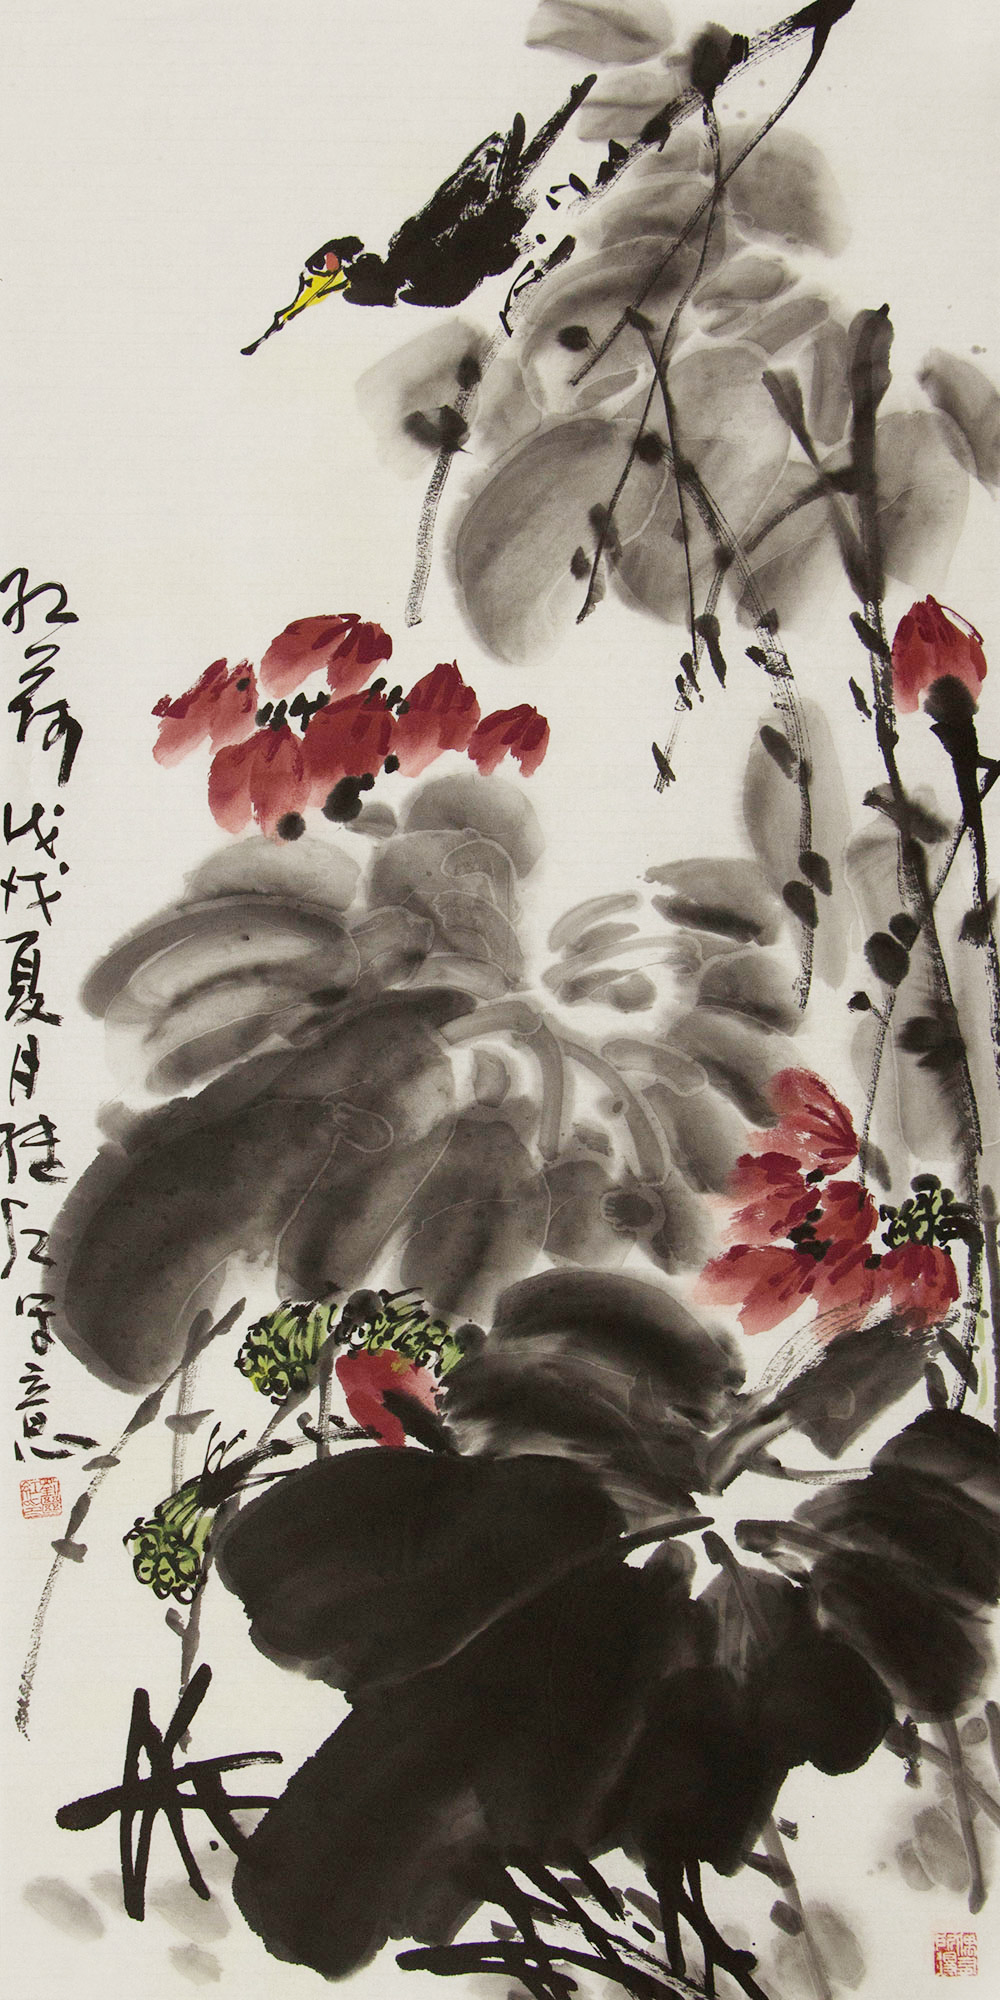 刘继红花鸟画作品构图严谨墨线流畅极具艺术感染力